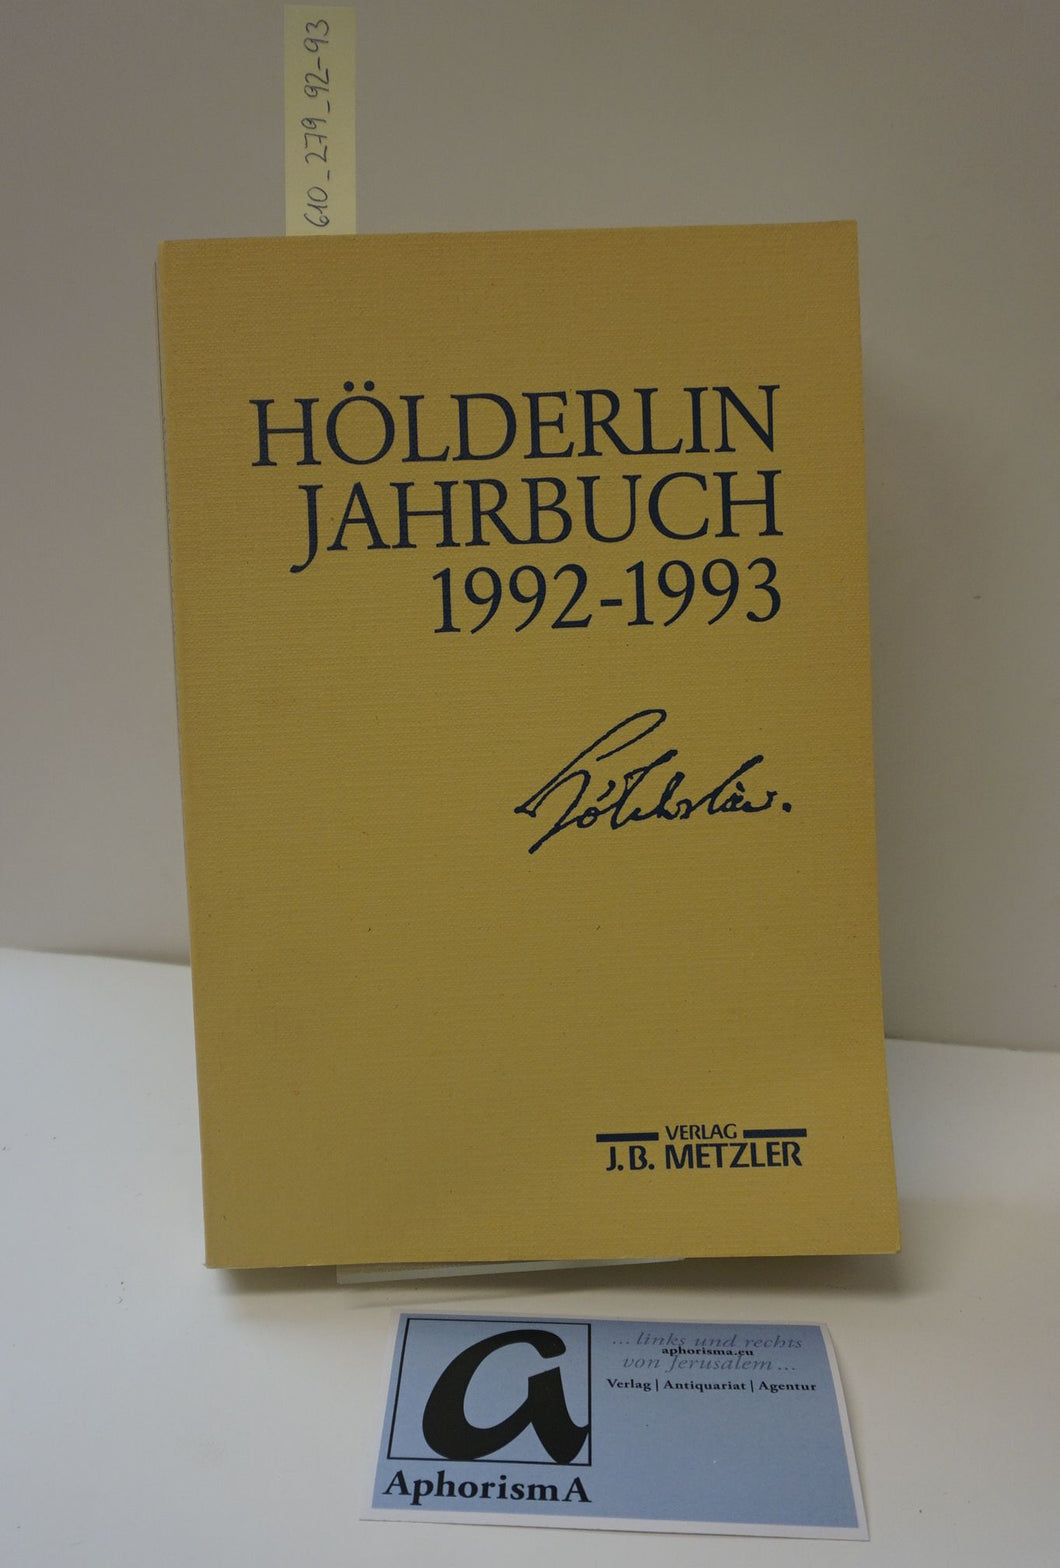 Hölderlin Jahrbuch 1992-1993